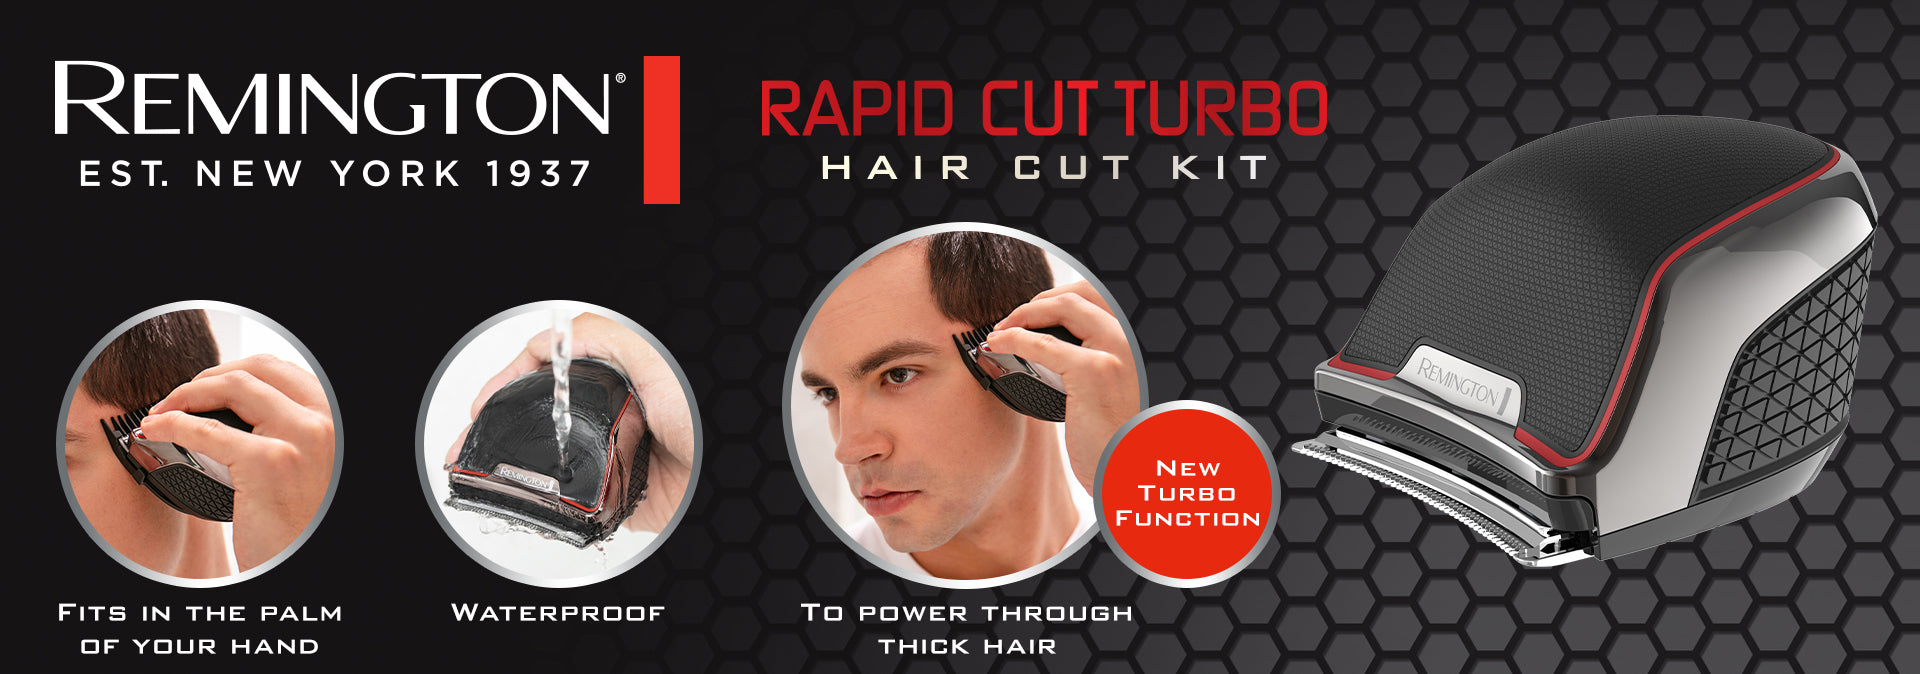 rapid cut turbo hair clipper